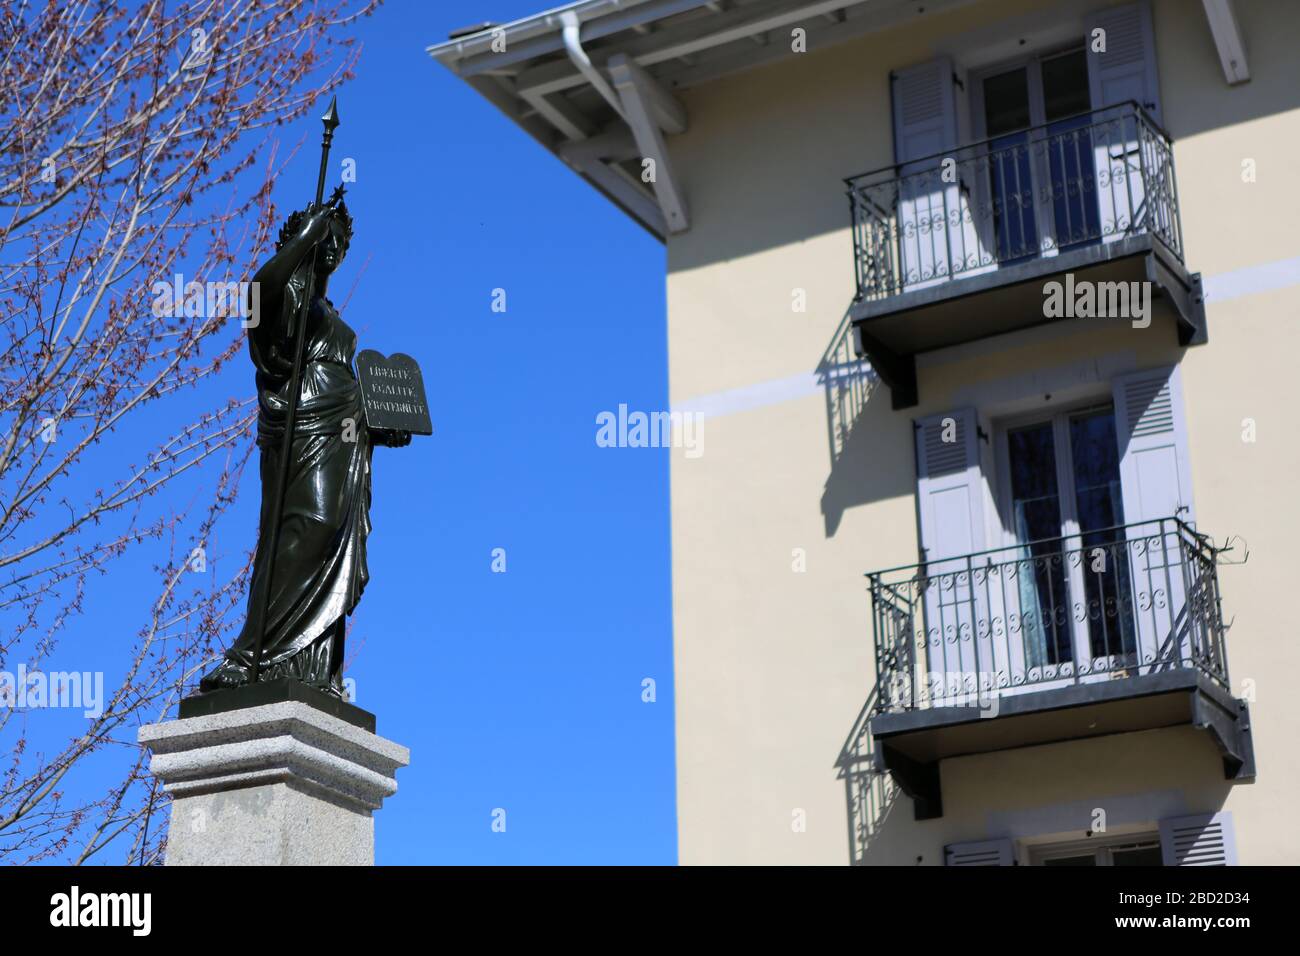 La Justice. Statue. Saint-Gervais-les-Bains. Haute-Savoie. France. Stock Photo